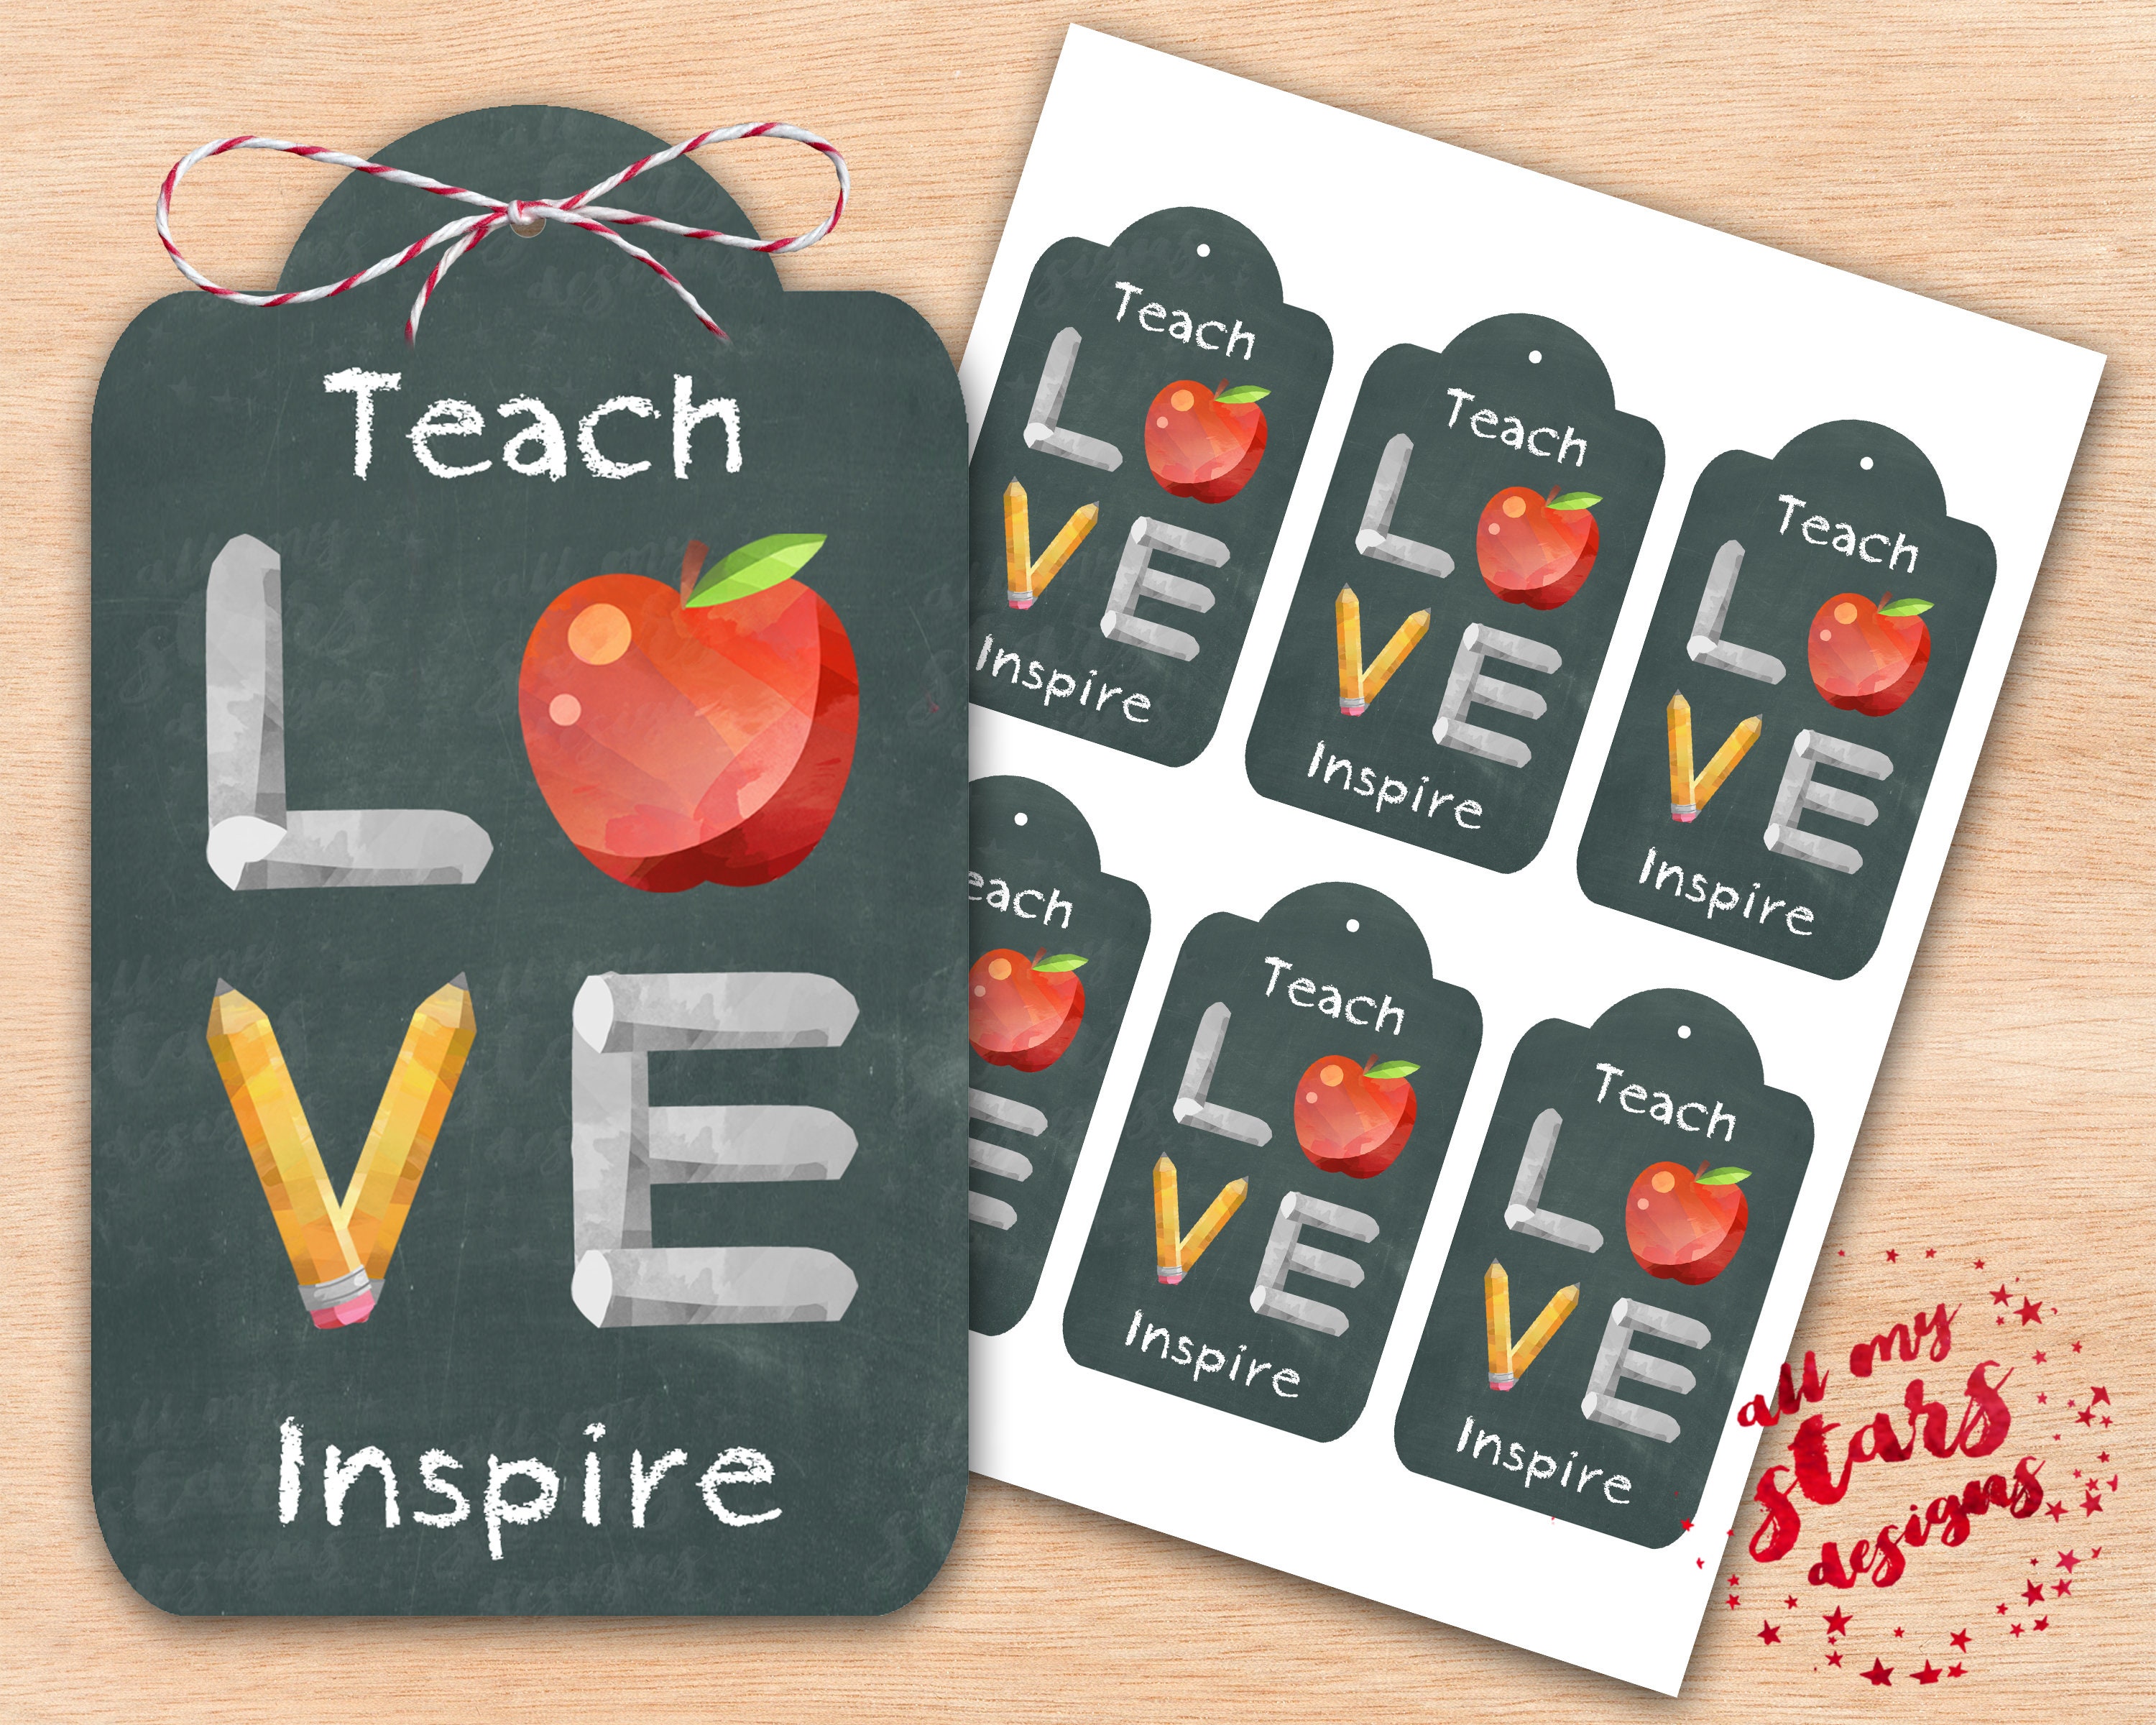 Tag teacher. Teach Love inspire.